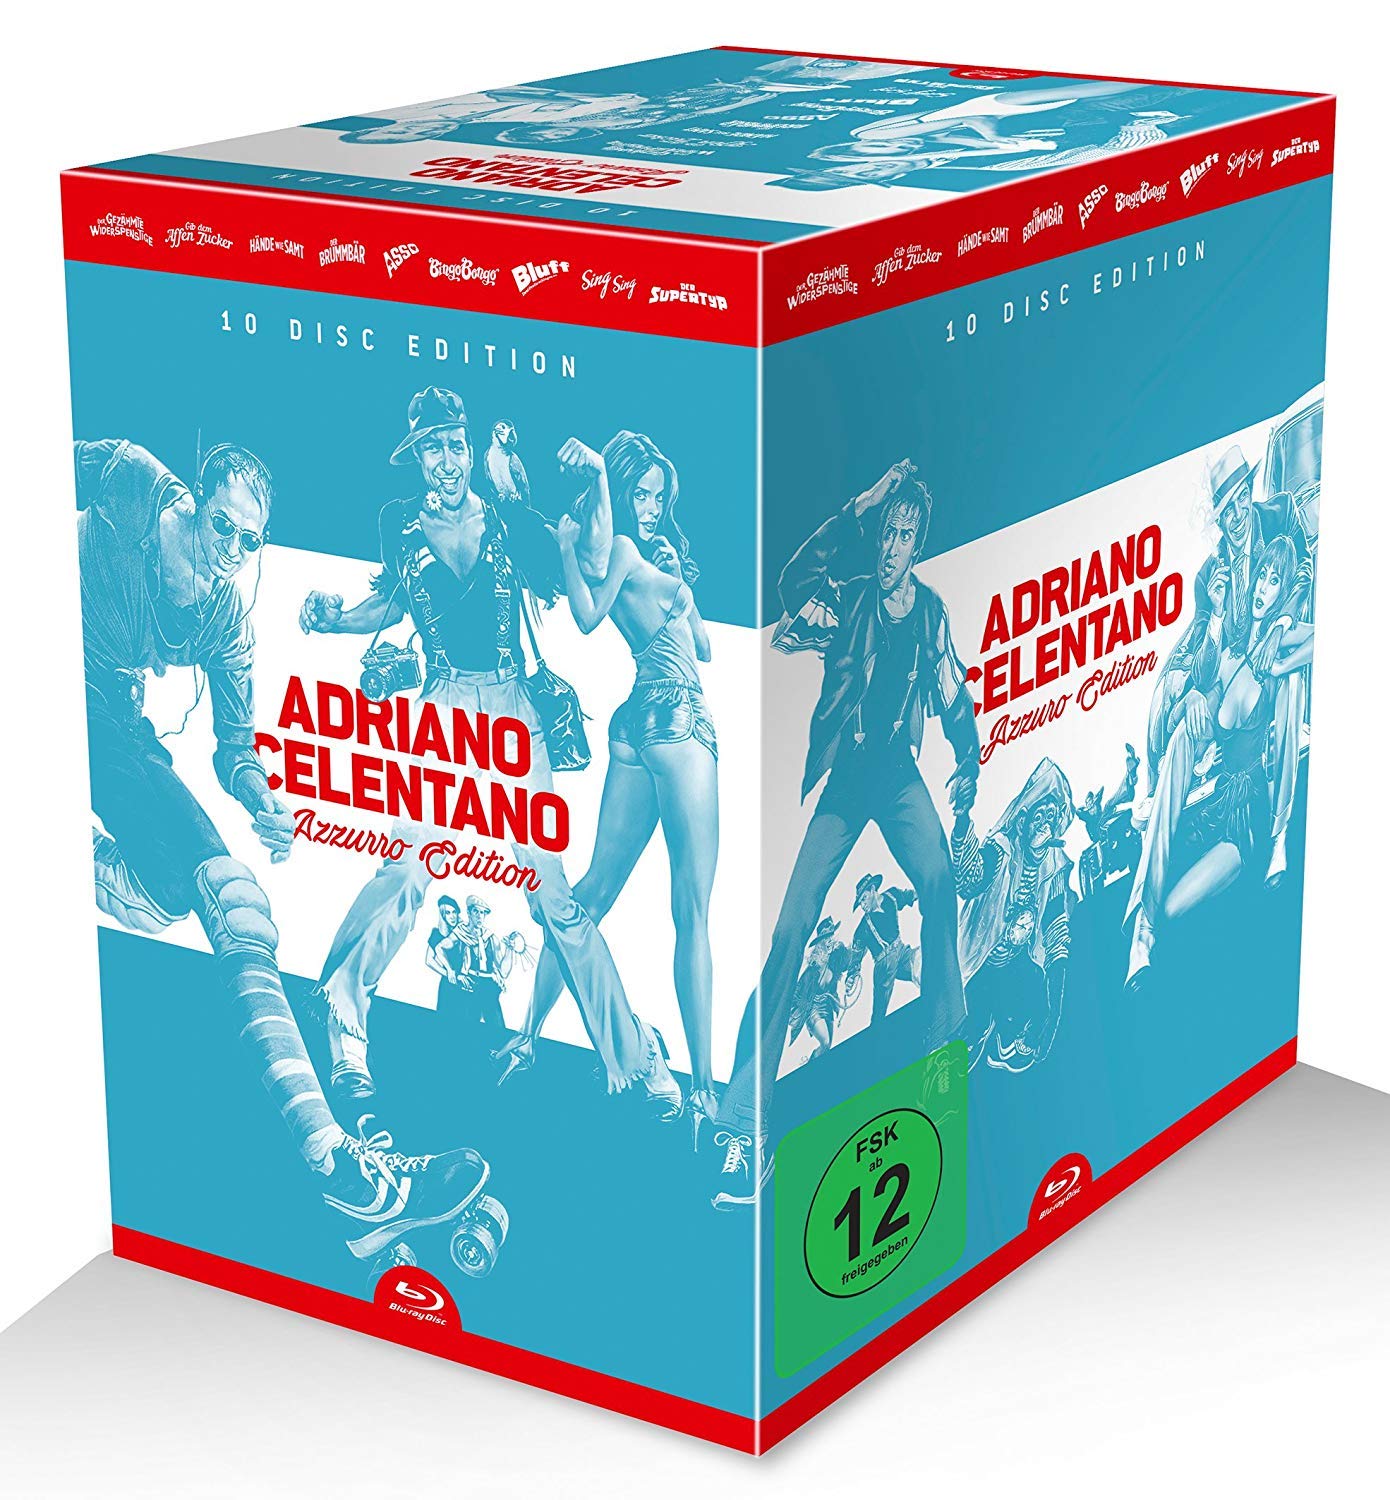 Adriano Celentano - Azzurro-Edition